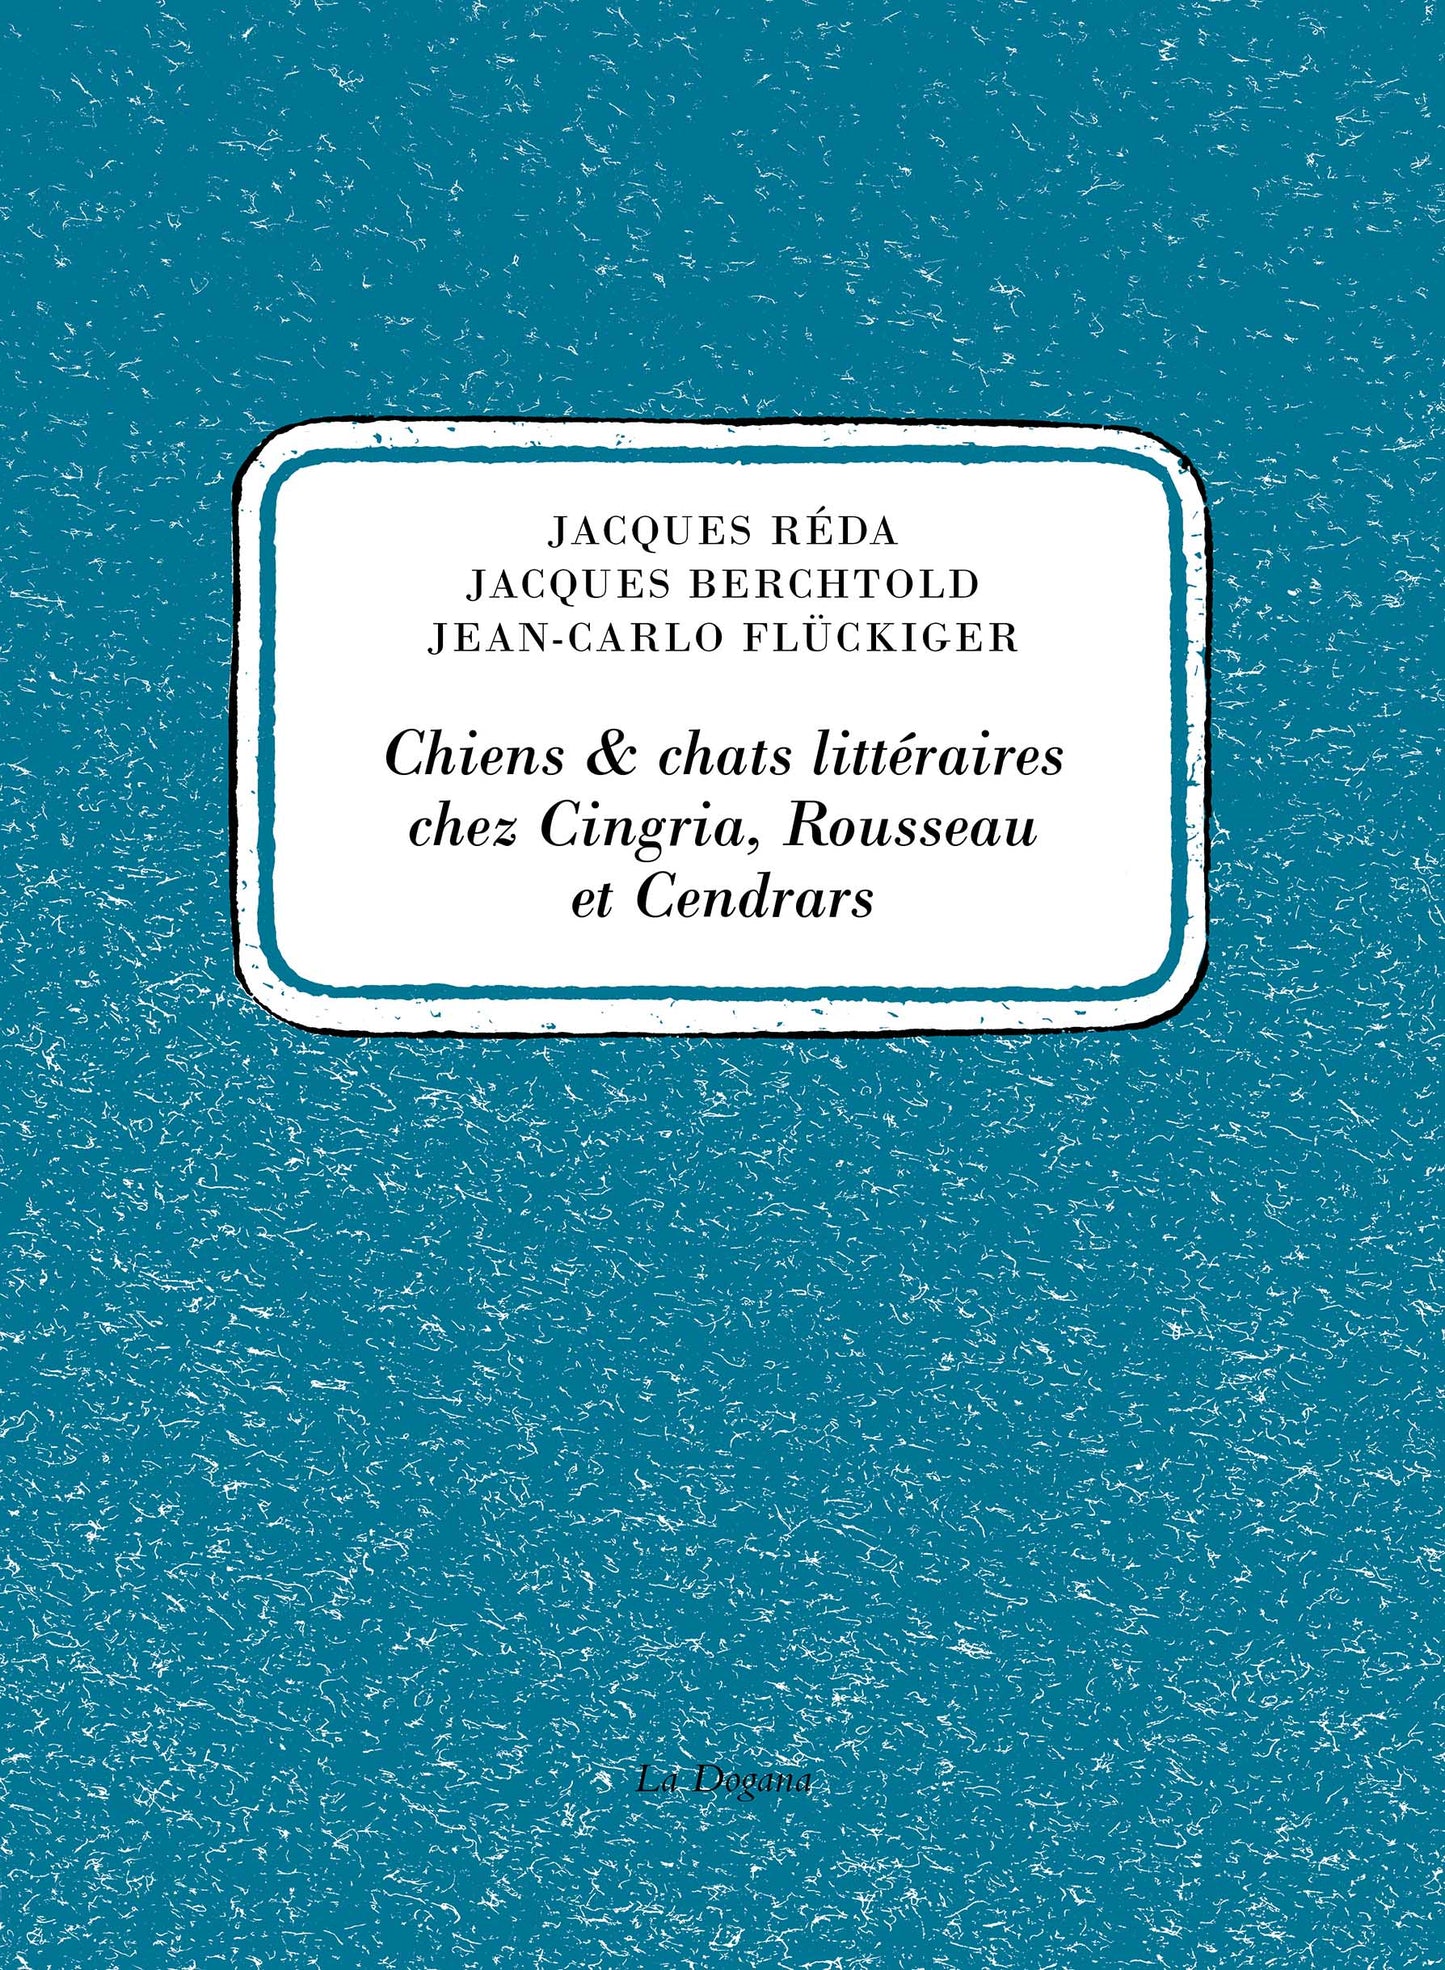 Chiens & chats littéraires chez Cingria, Rousseau et Cendrars